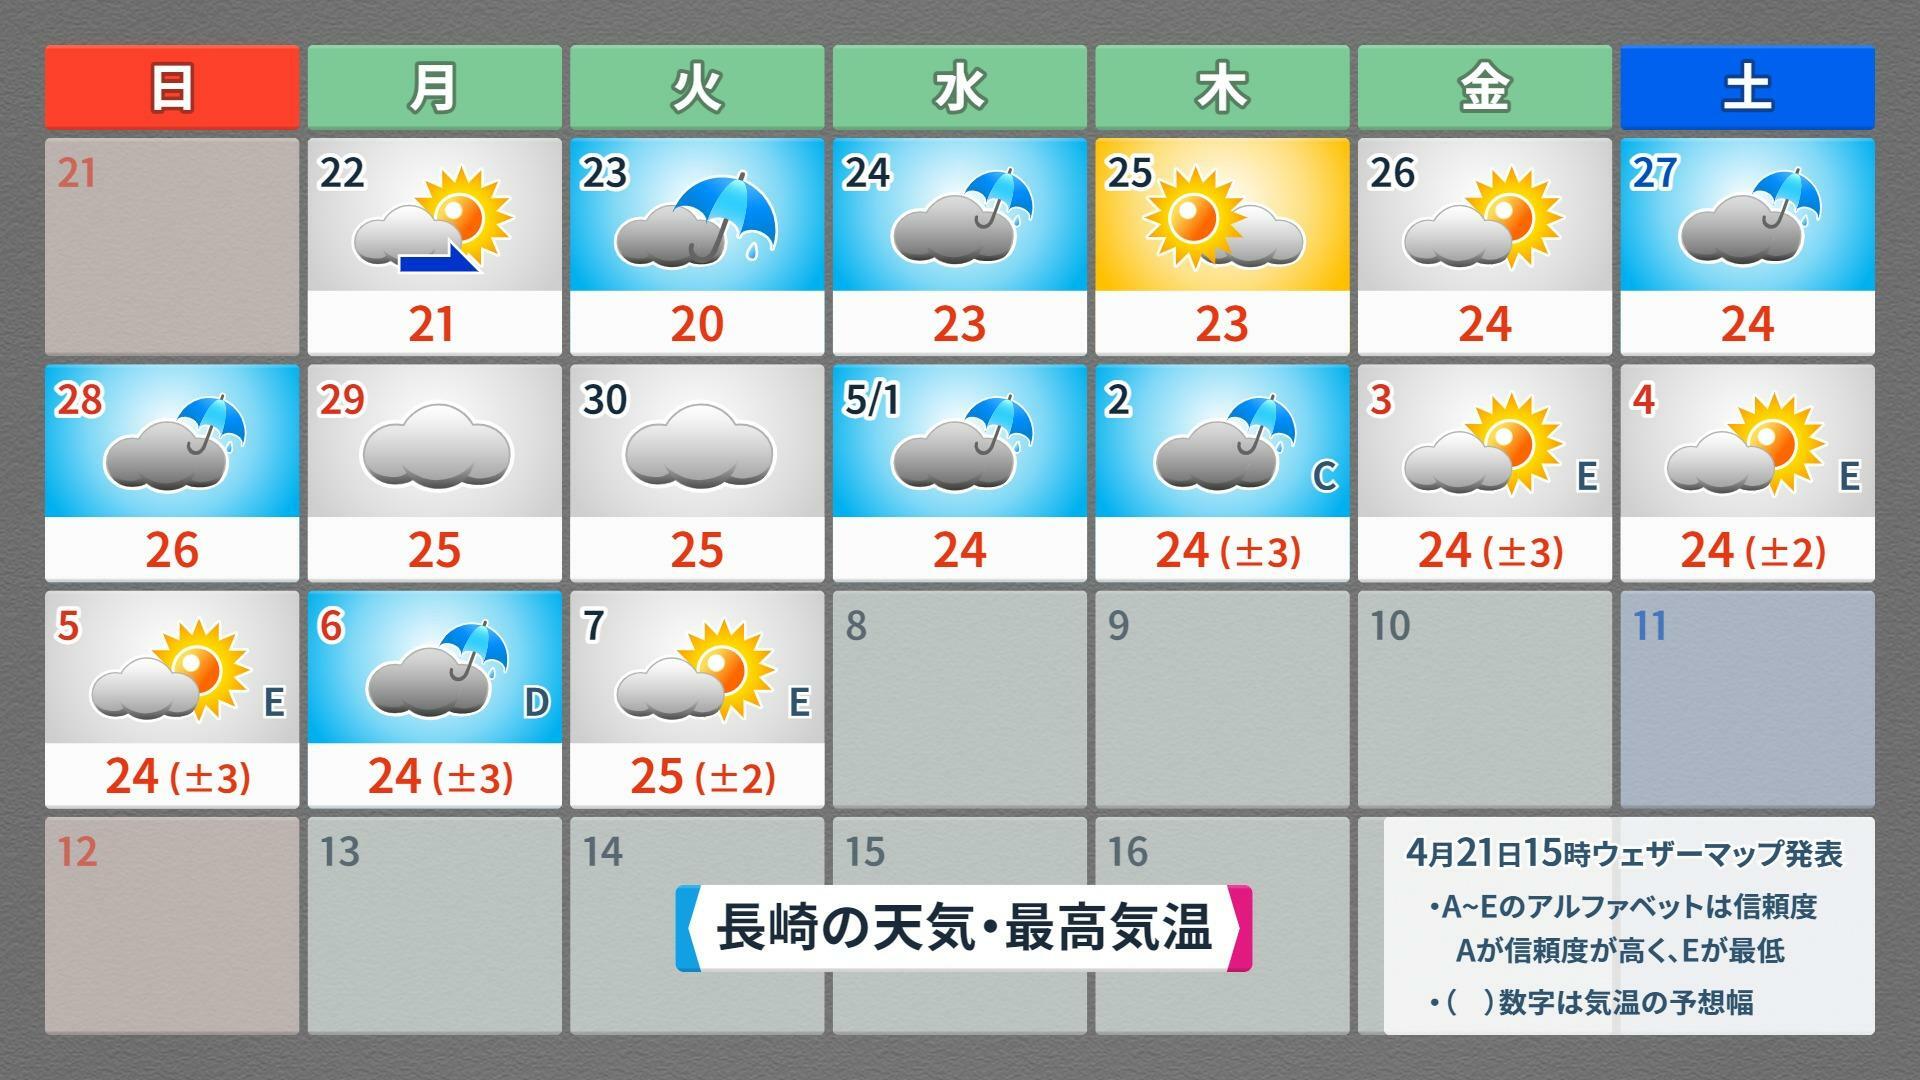 【長崎】この先16日間の天気予報（4月21日午後5時現在）、ウェザーマップ作画